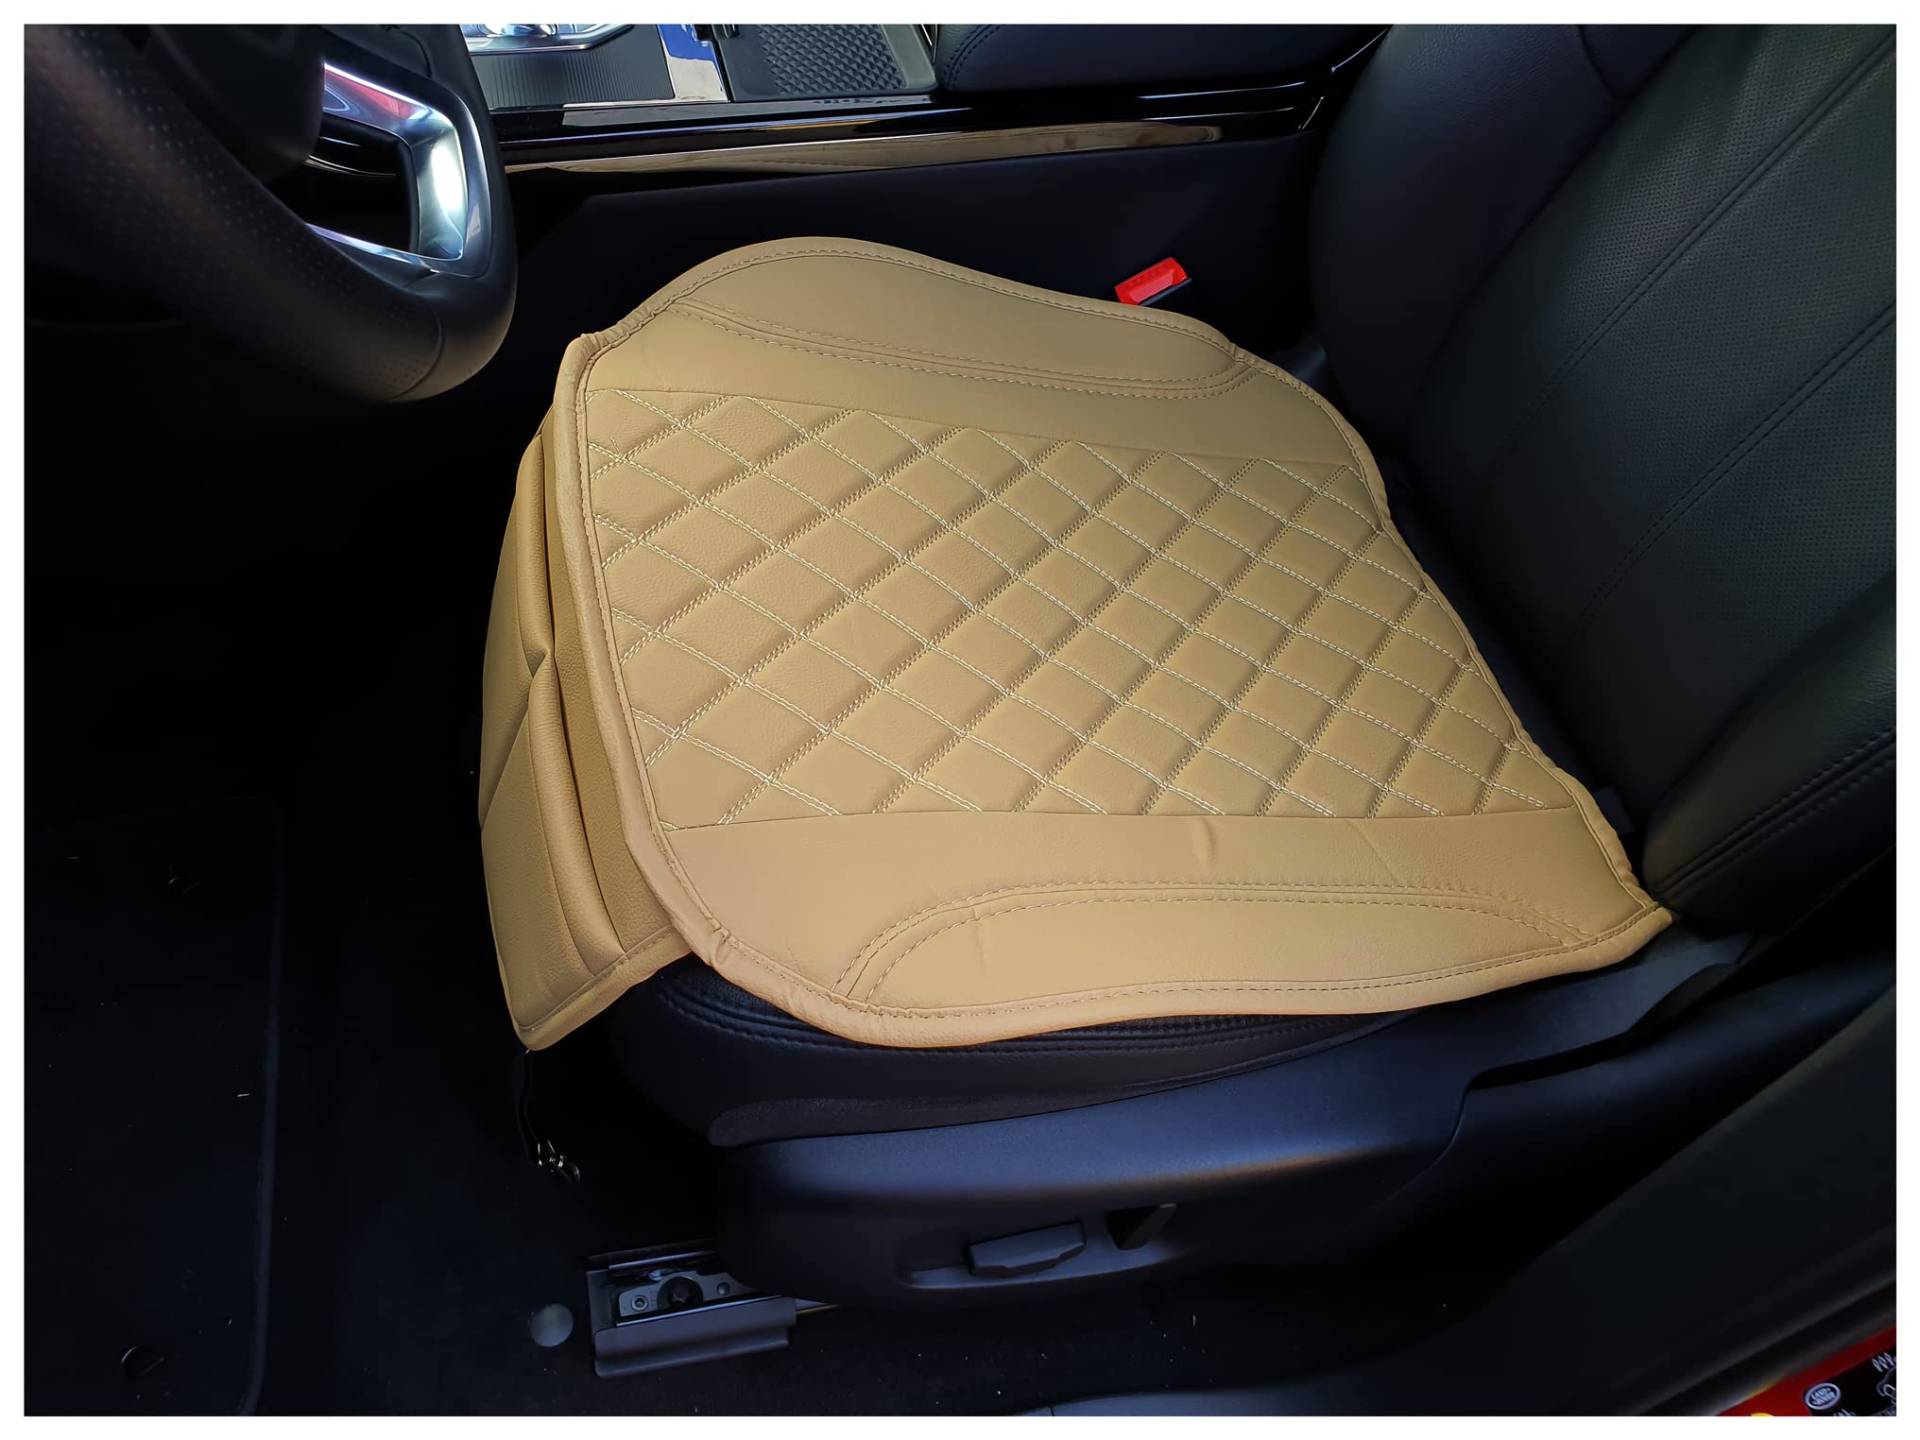 BREMER SITZBEZÜGE Sitzauflage Kunstleder Textilleder kompatibel mit Mazda CX-9 Sitzkissen in Kunstleder Beige OT405 von BREMER SITZBEZÜGE